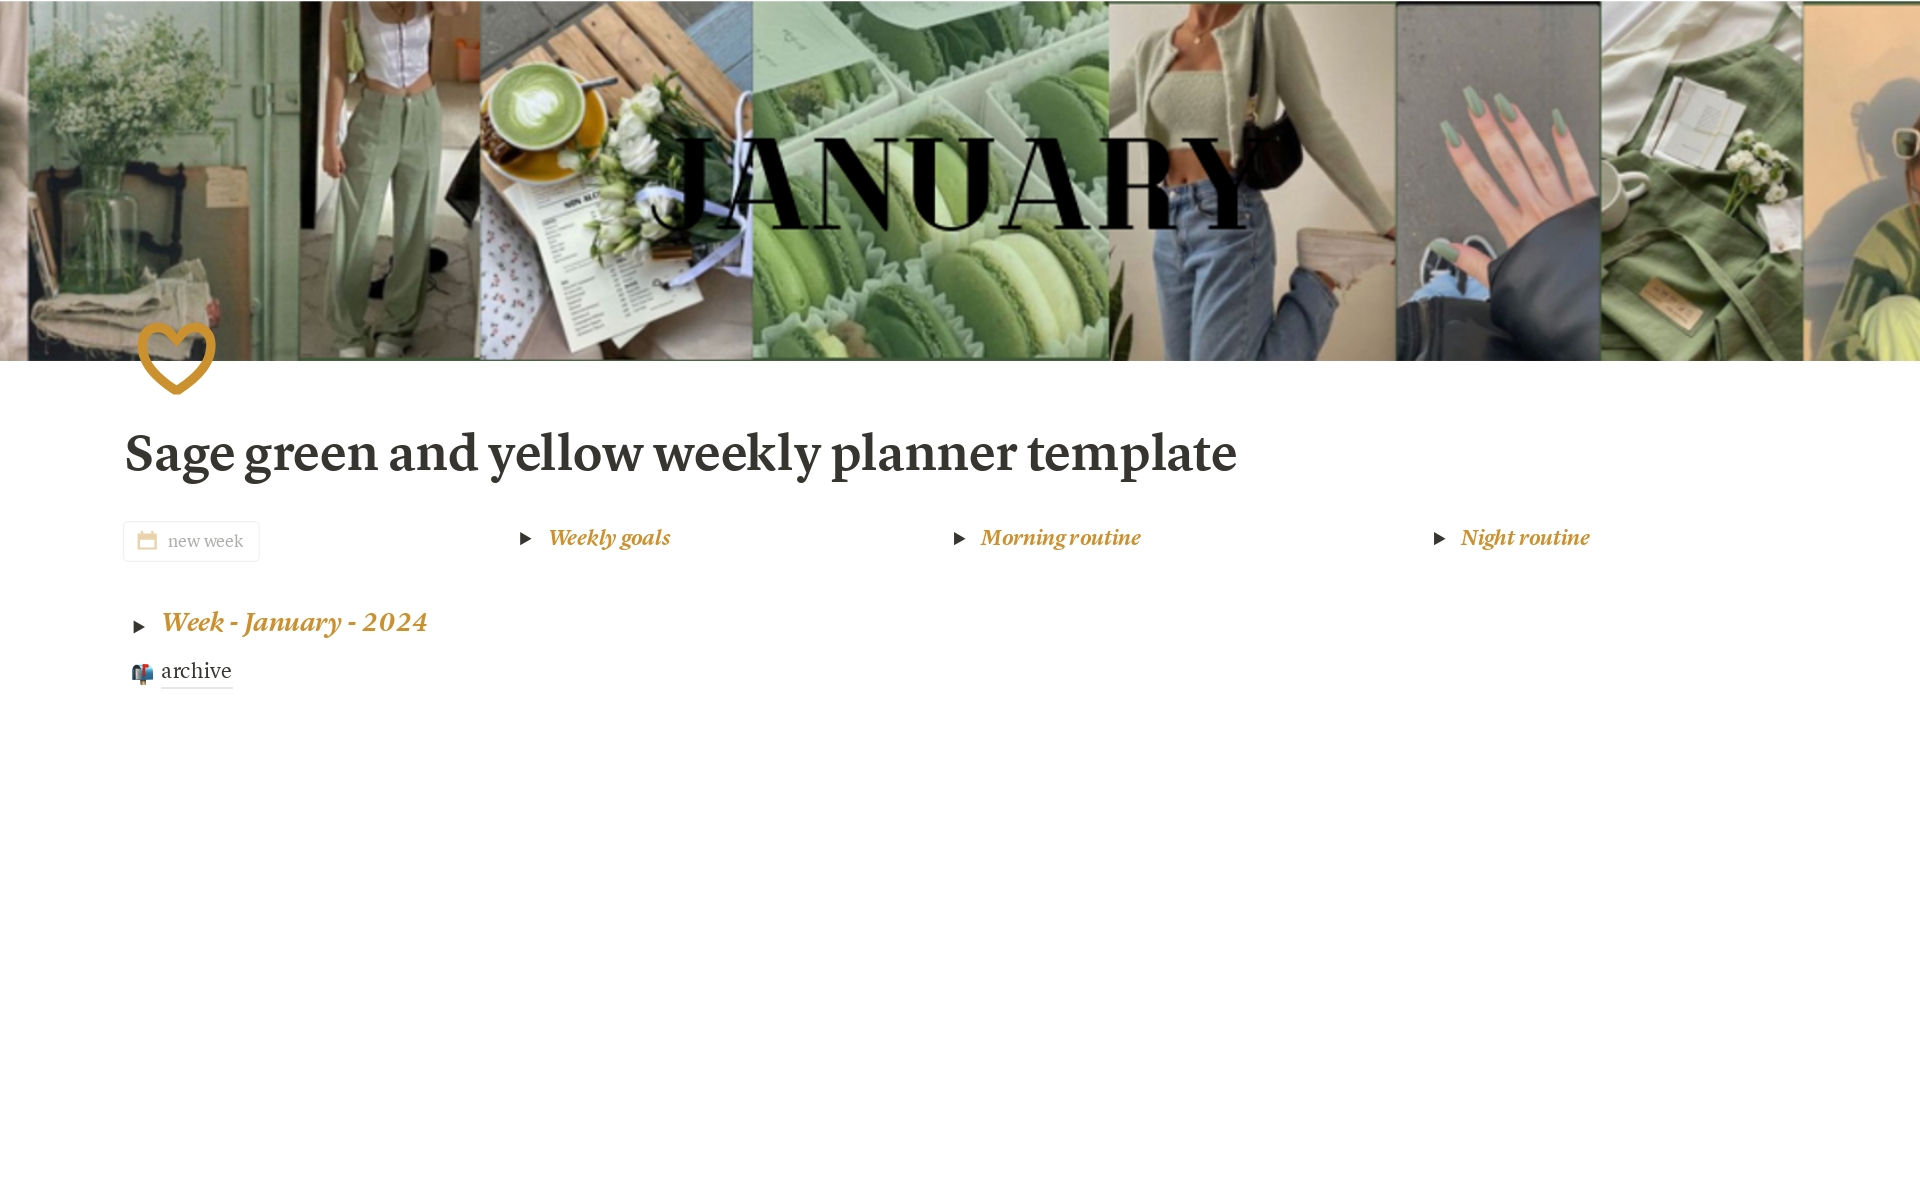 Vista previa de una plantilla para Sage green and yellow weekly planner